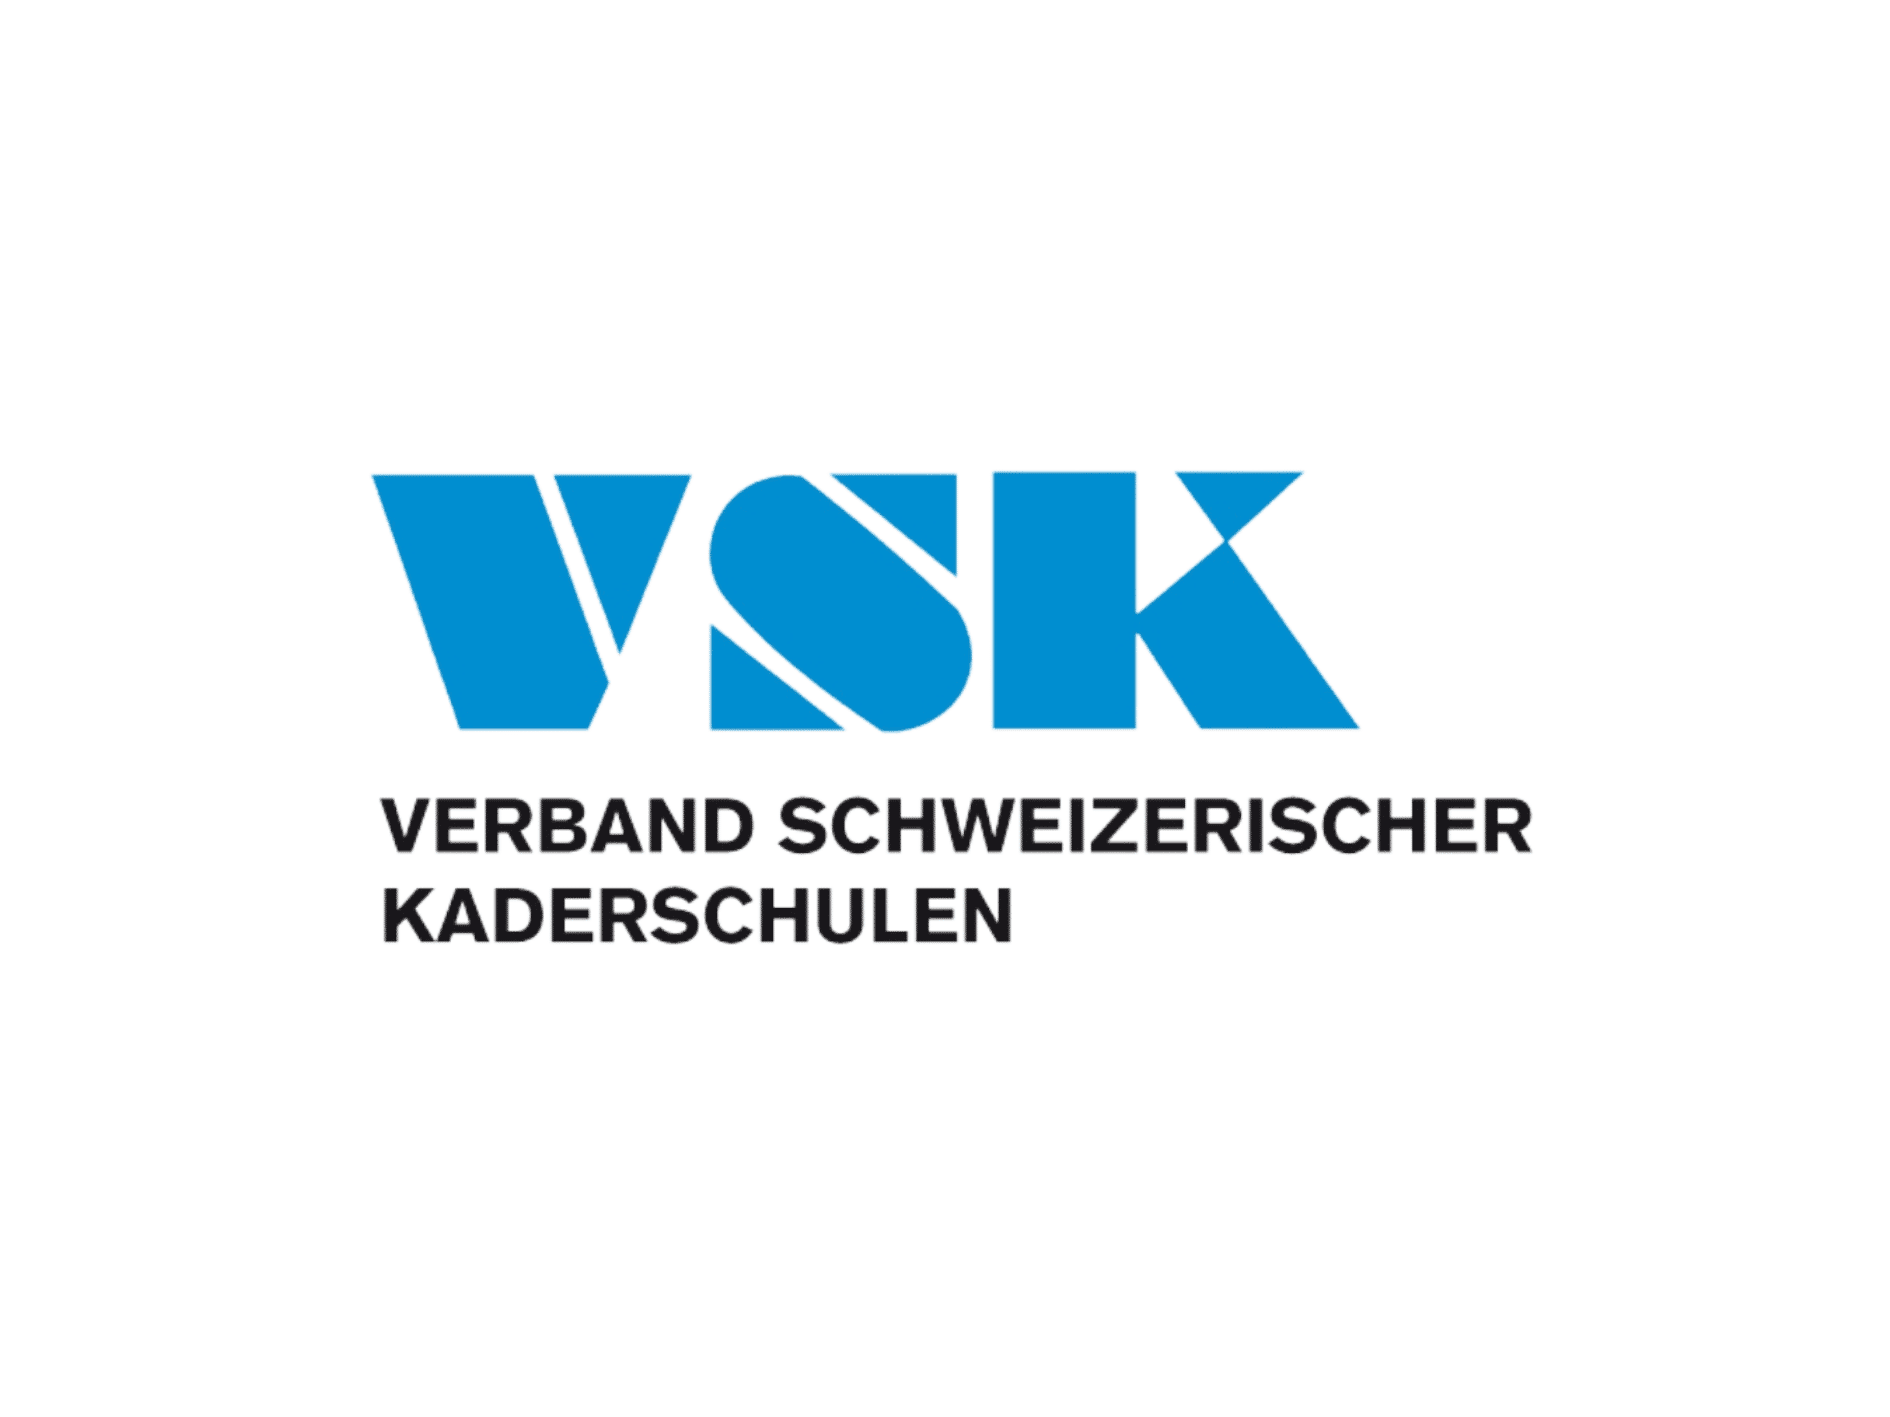 Marketing Schulung Partner VSK